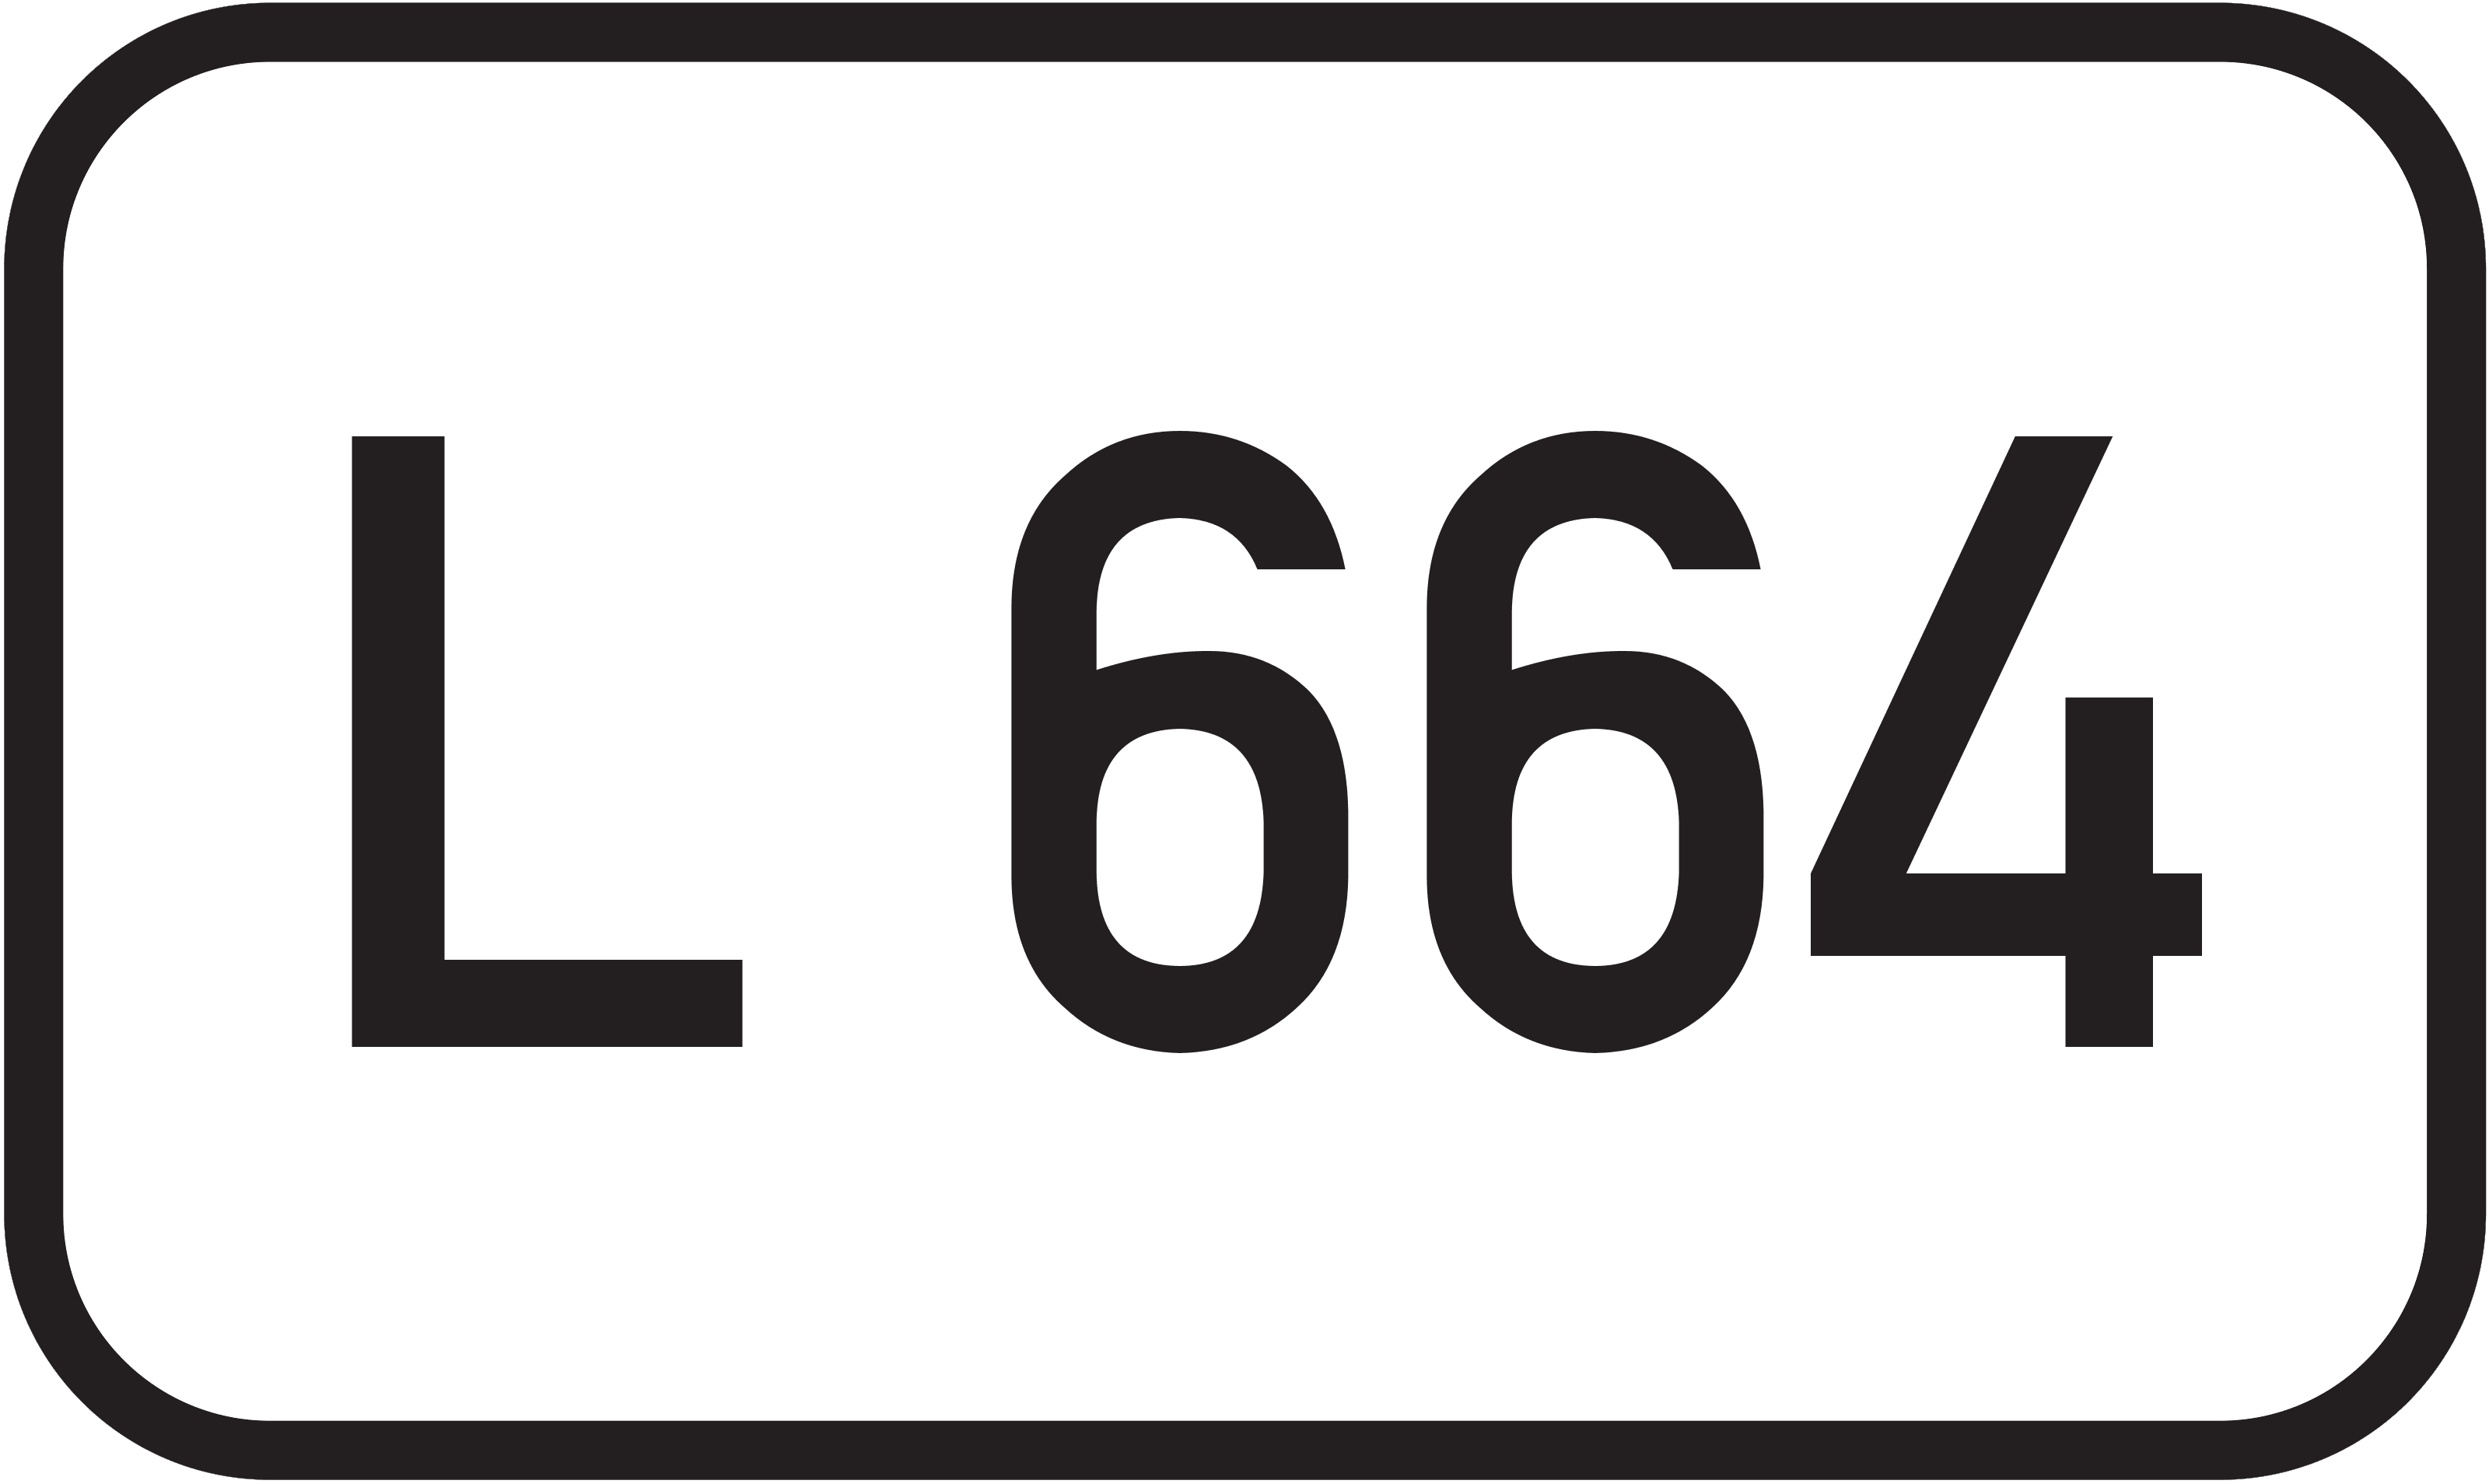 Landesstraße L 664